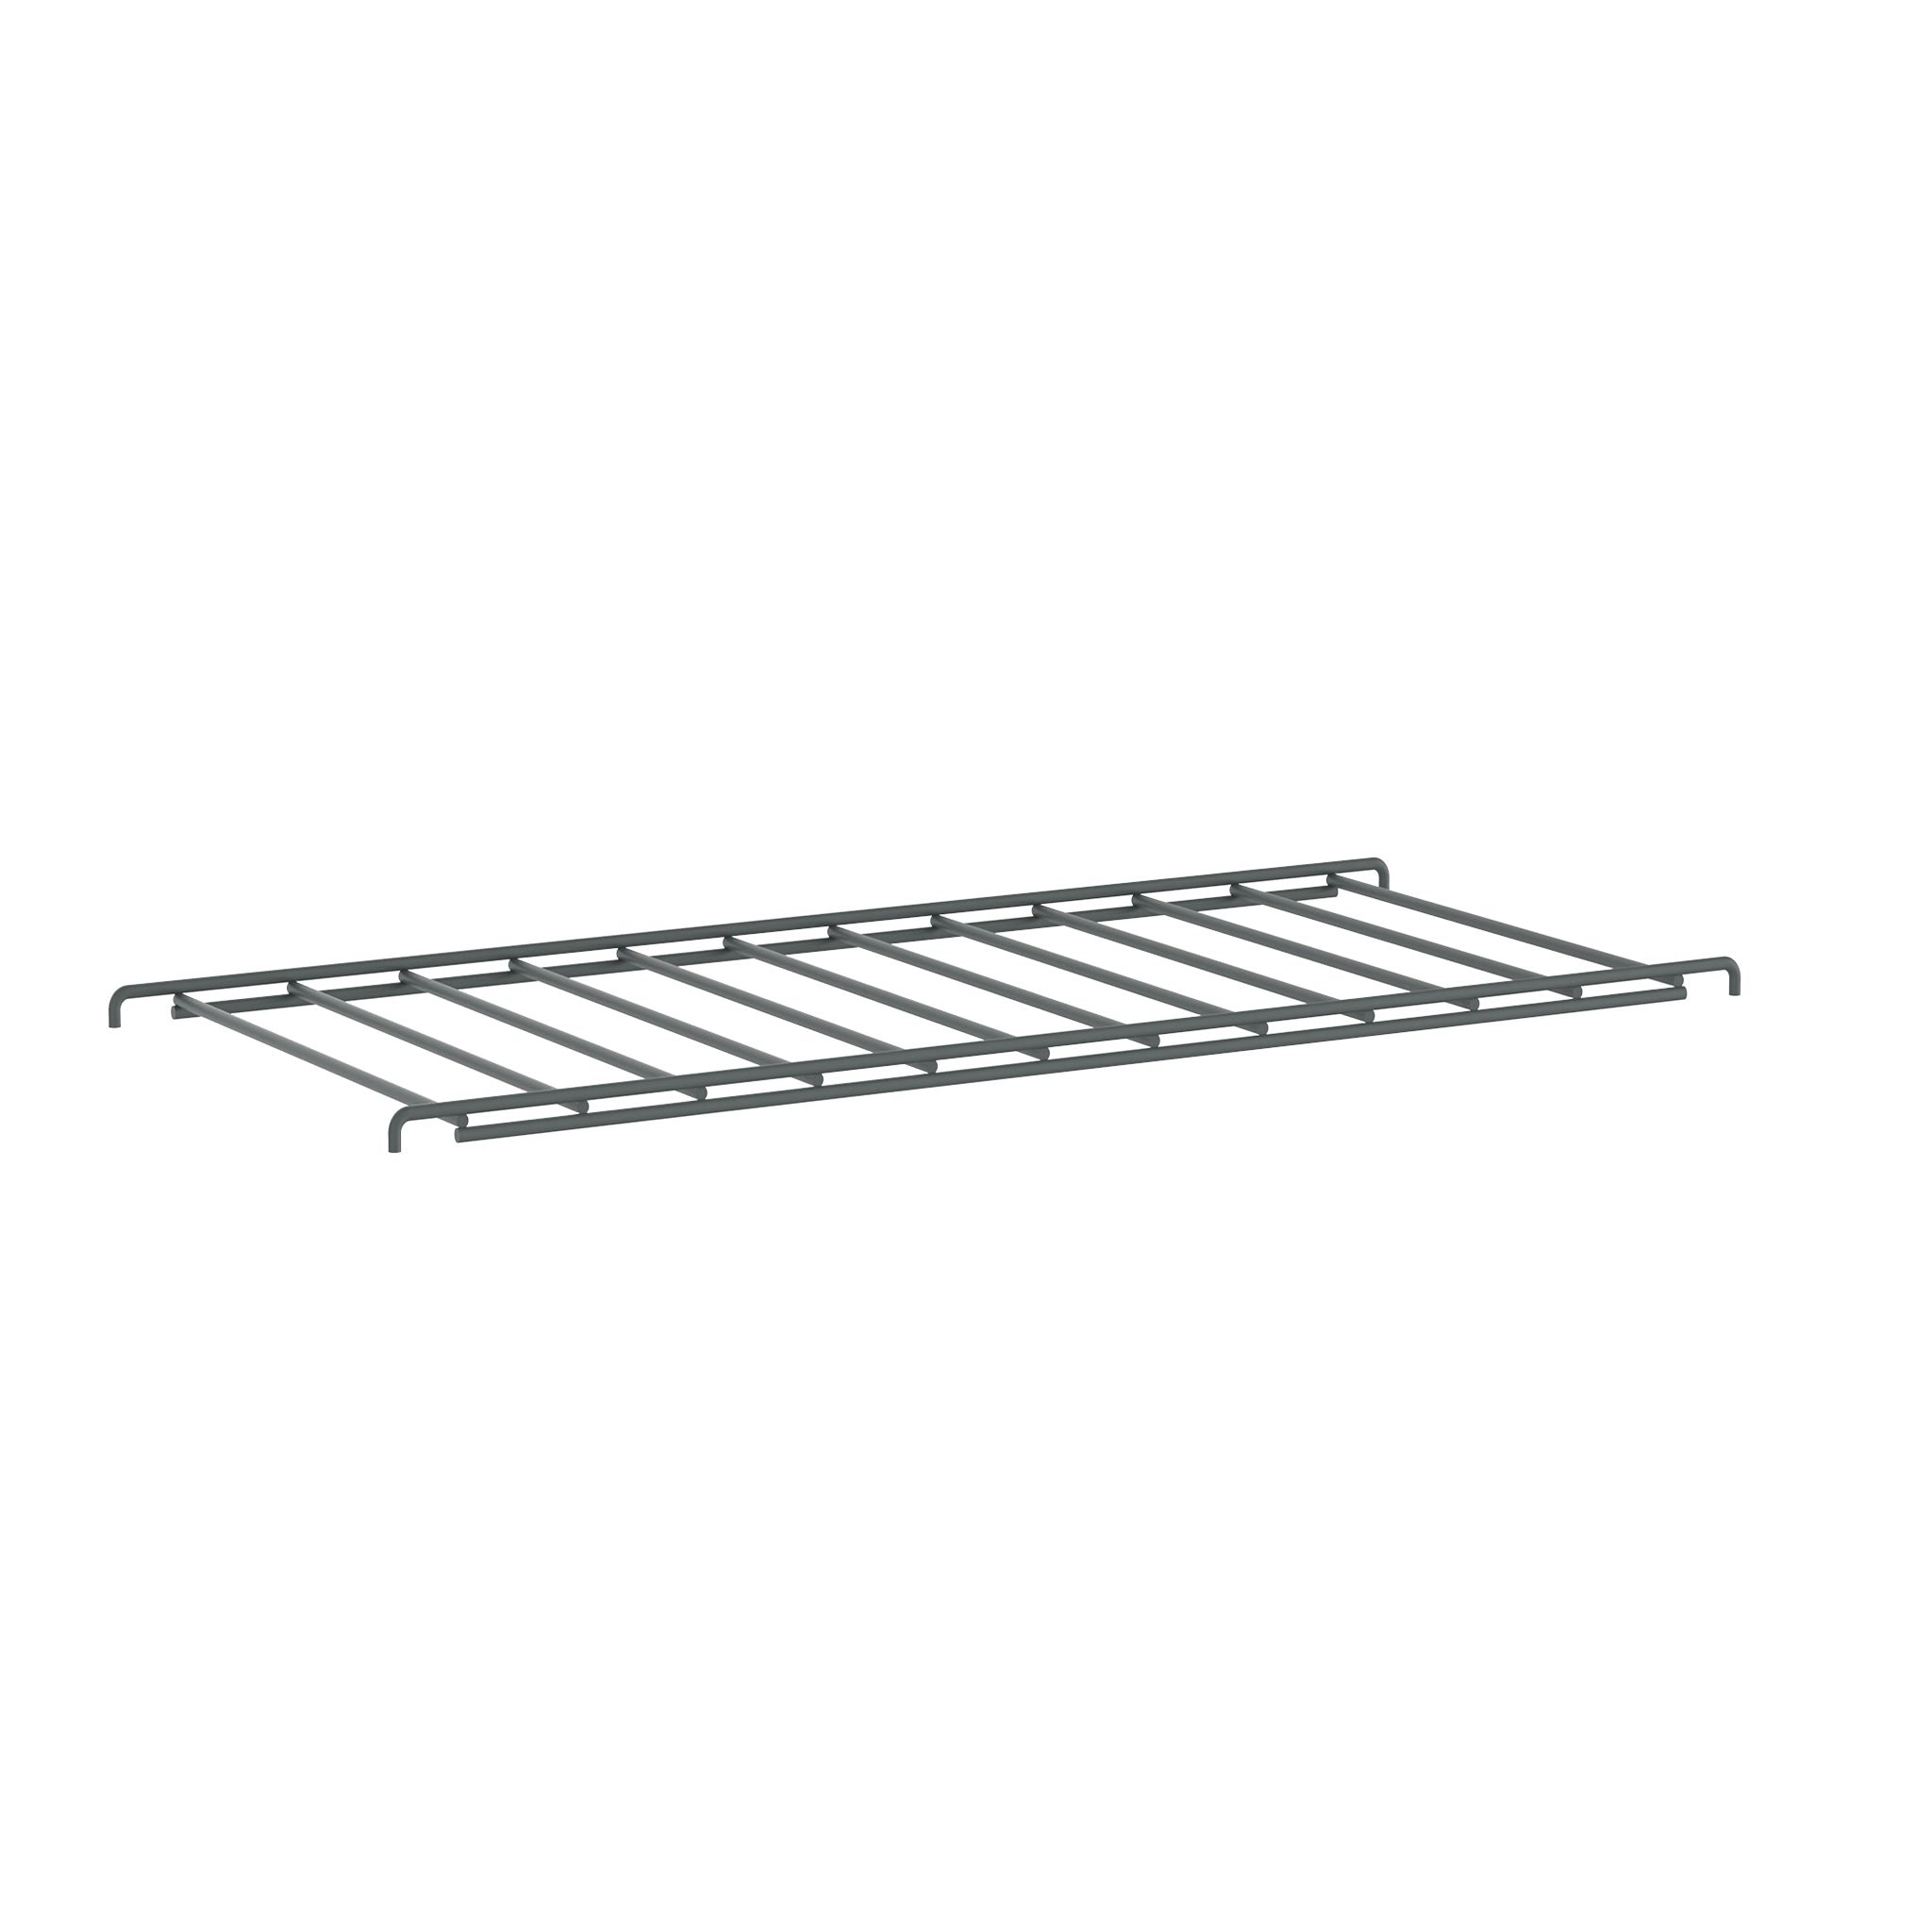 TRIA Storage System - Grid Shelf by Mobles 114